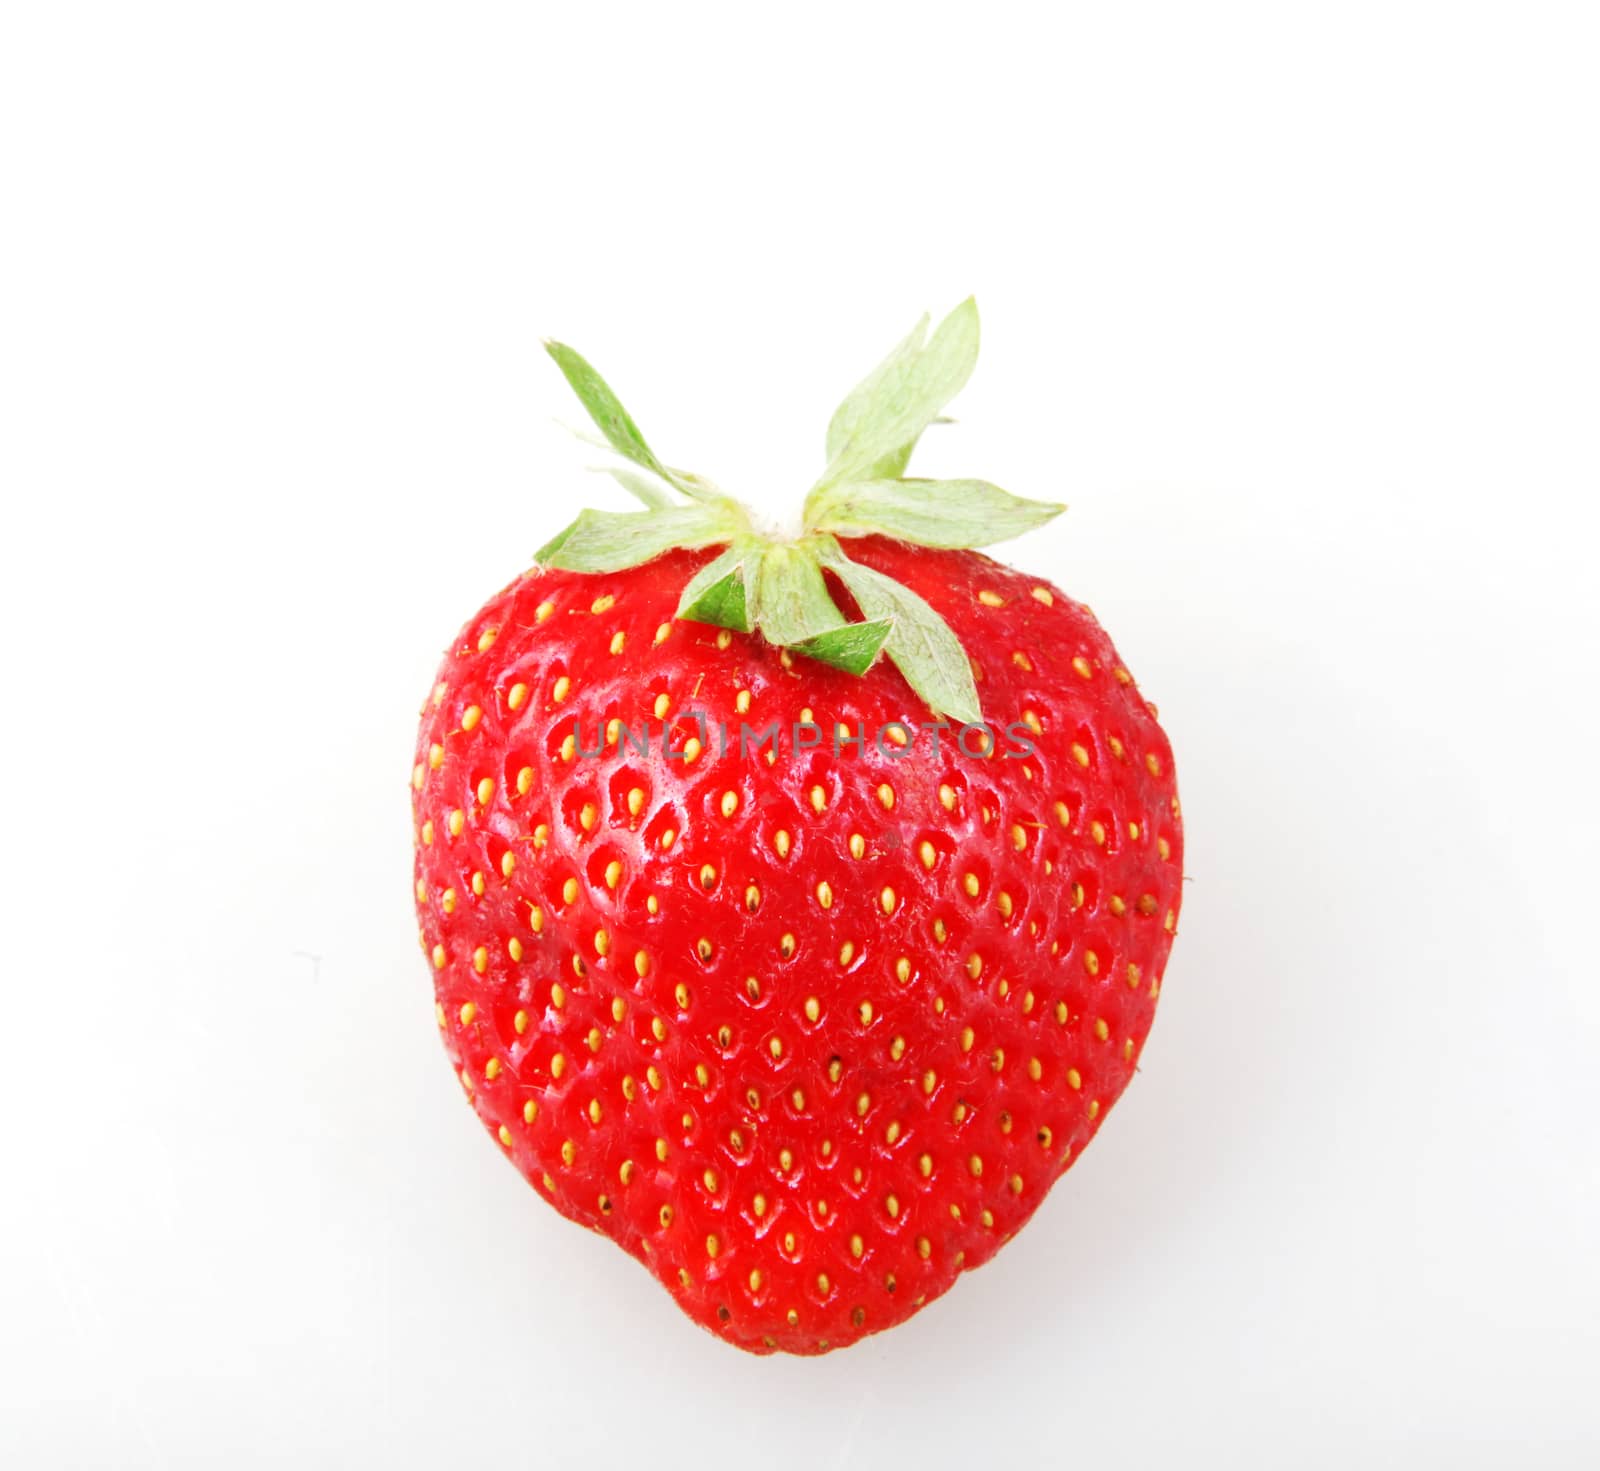 Garden Strawberry Against White Background